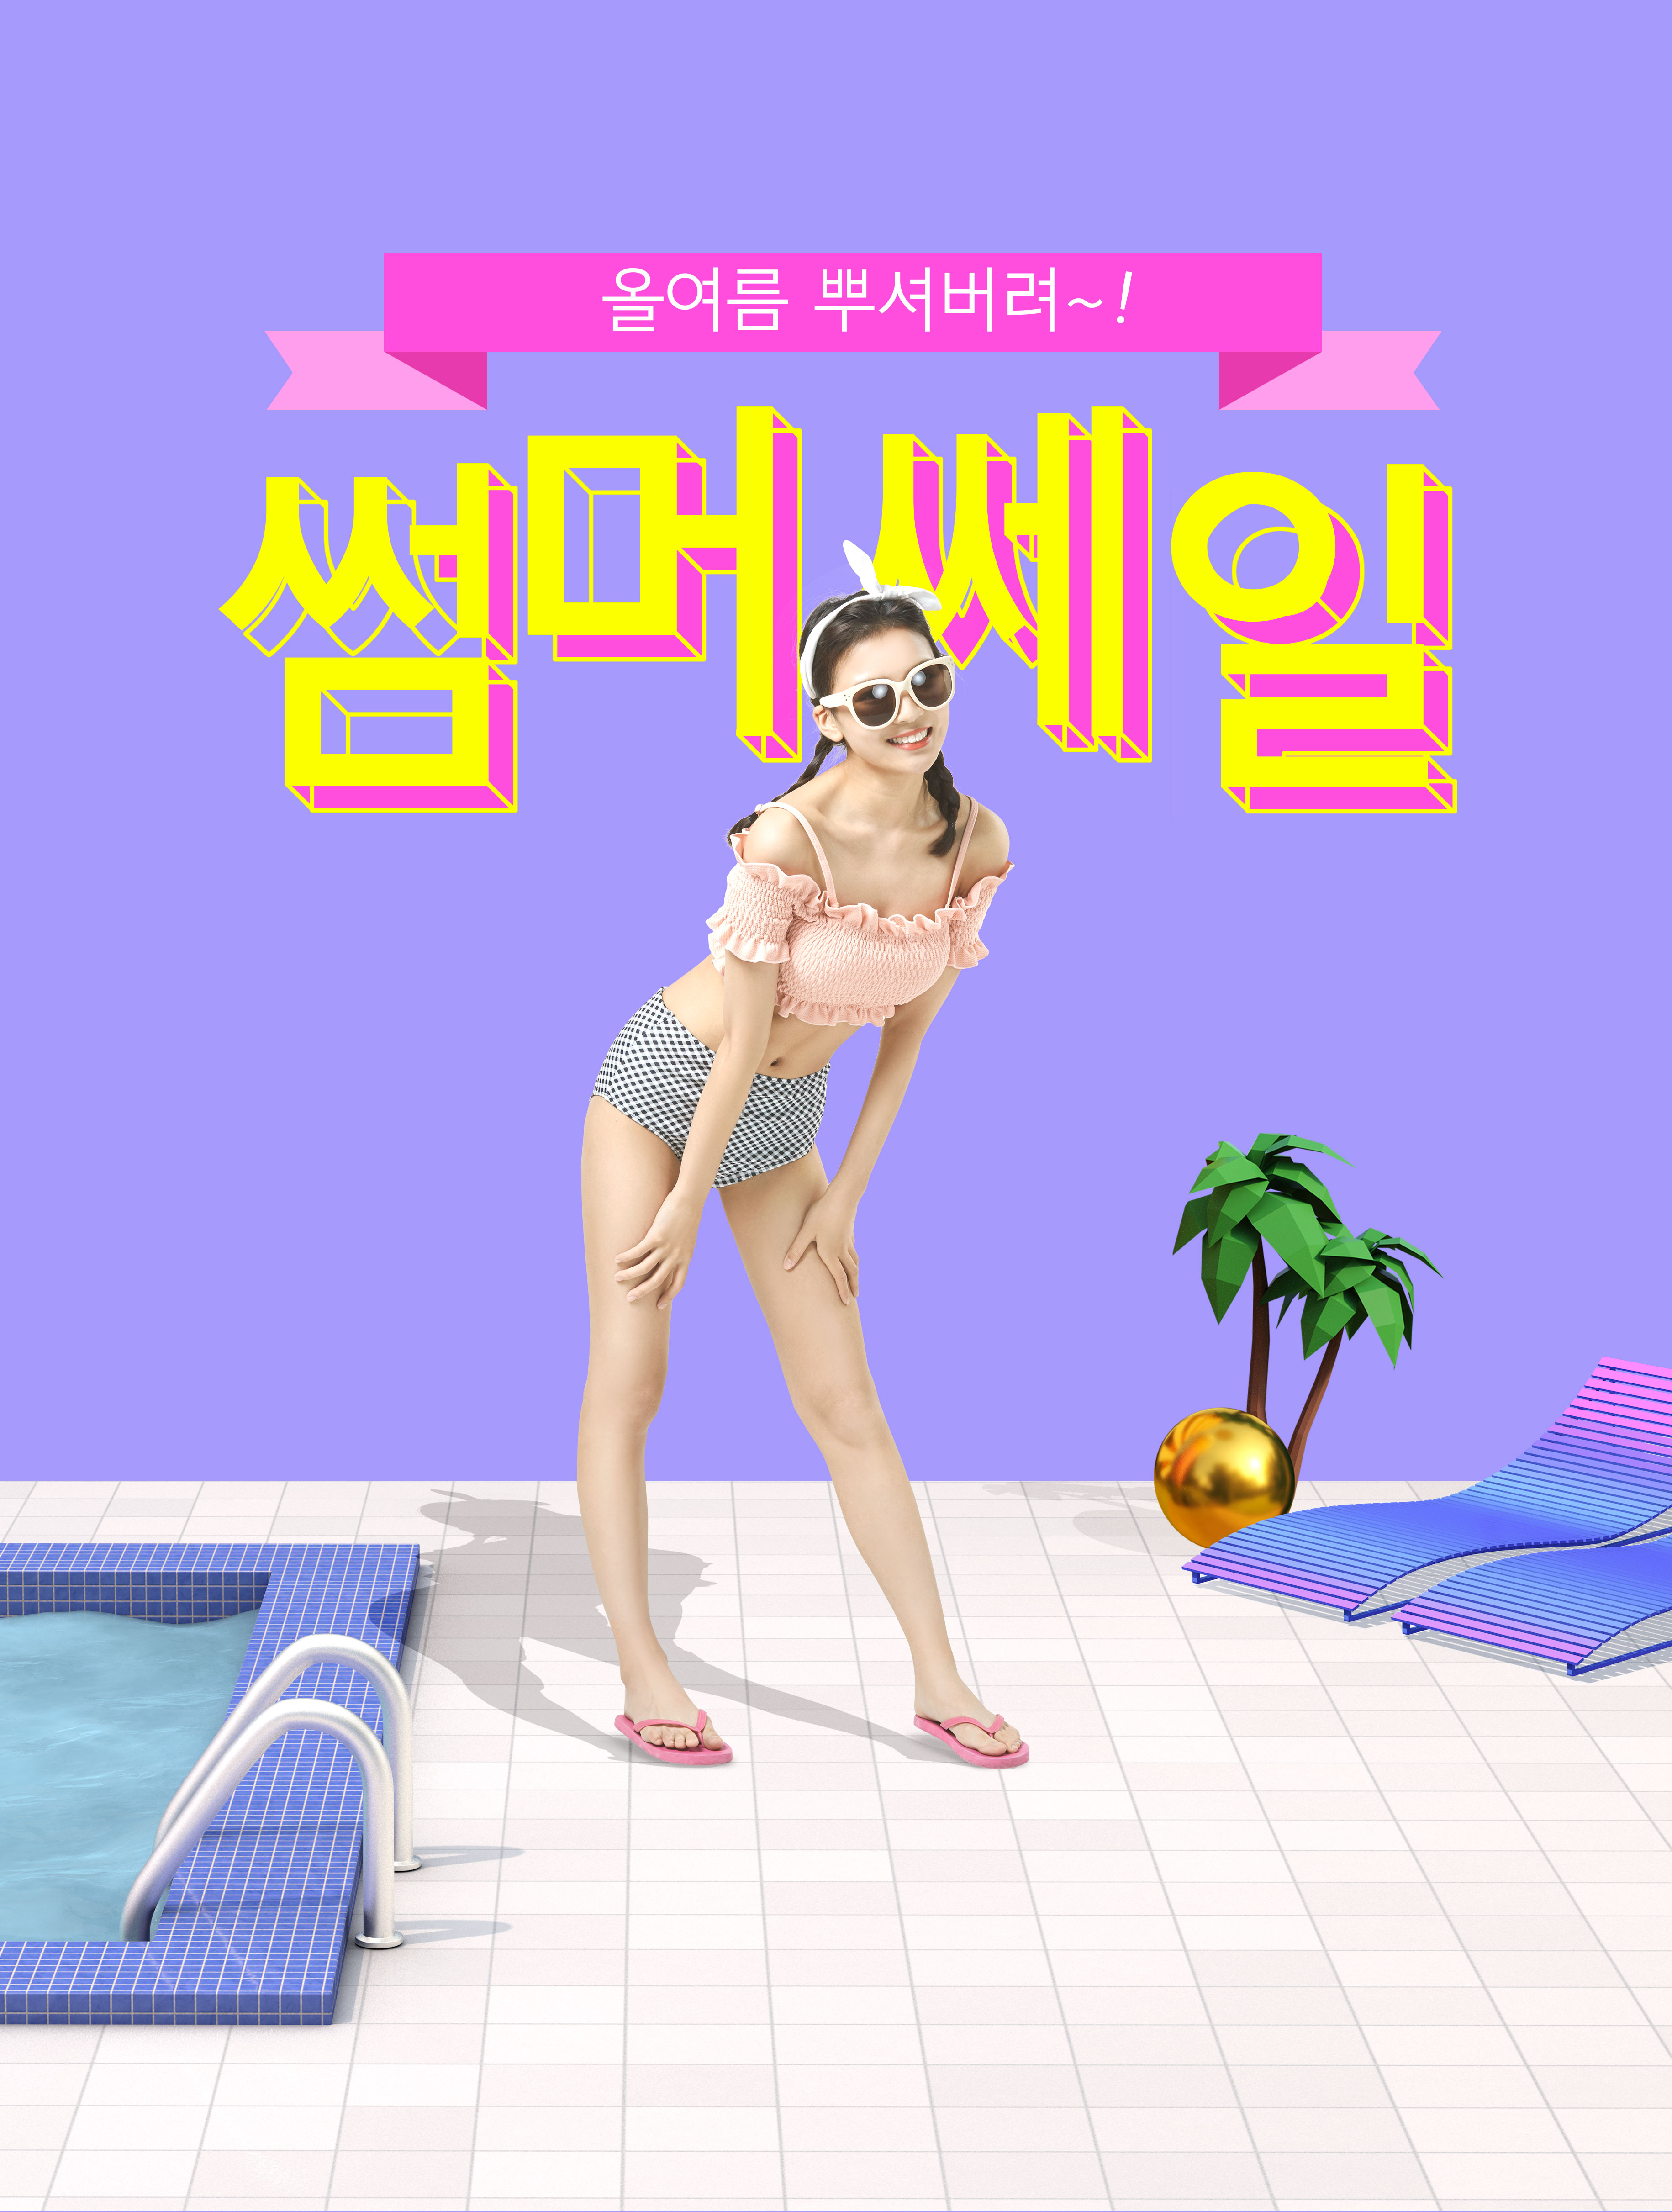 酷暑夏季度假活动广告海报设计套装[PSD]插图(6)